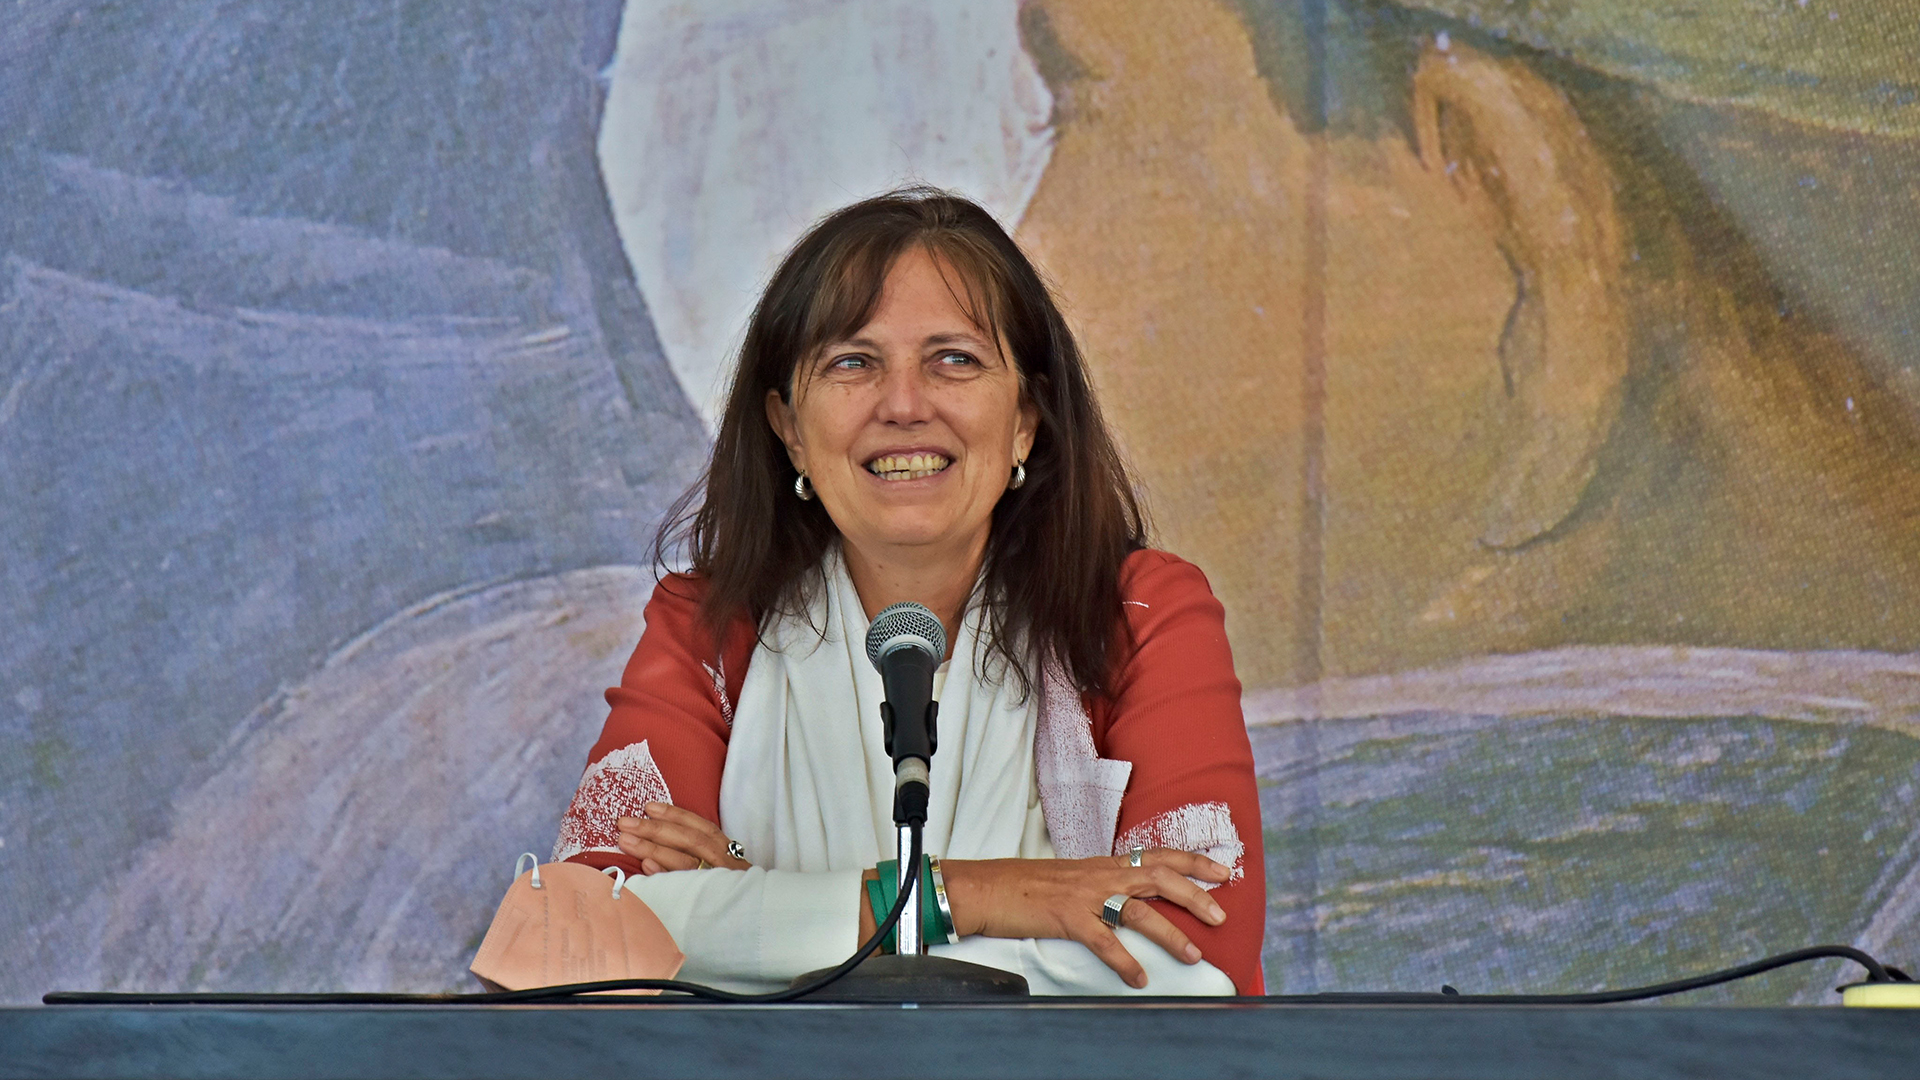 Claudia Piñeiro, tras ganar el Premio Hammett: “Este galardón es el  corolario de la lucha de tantas mujeres” - Infobae